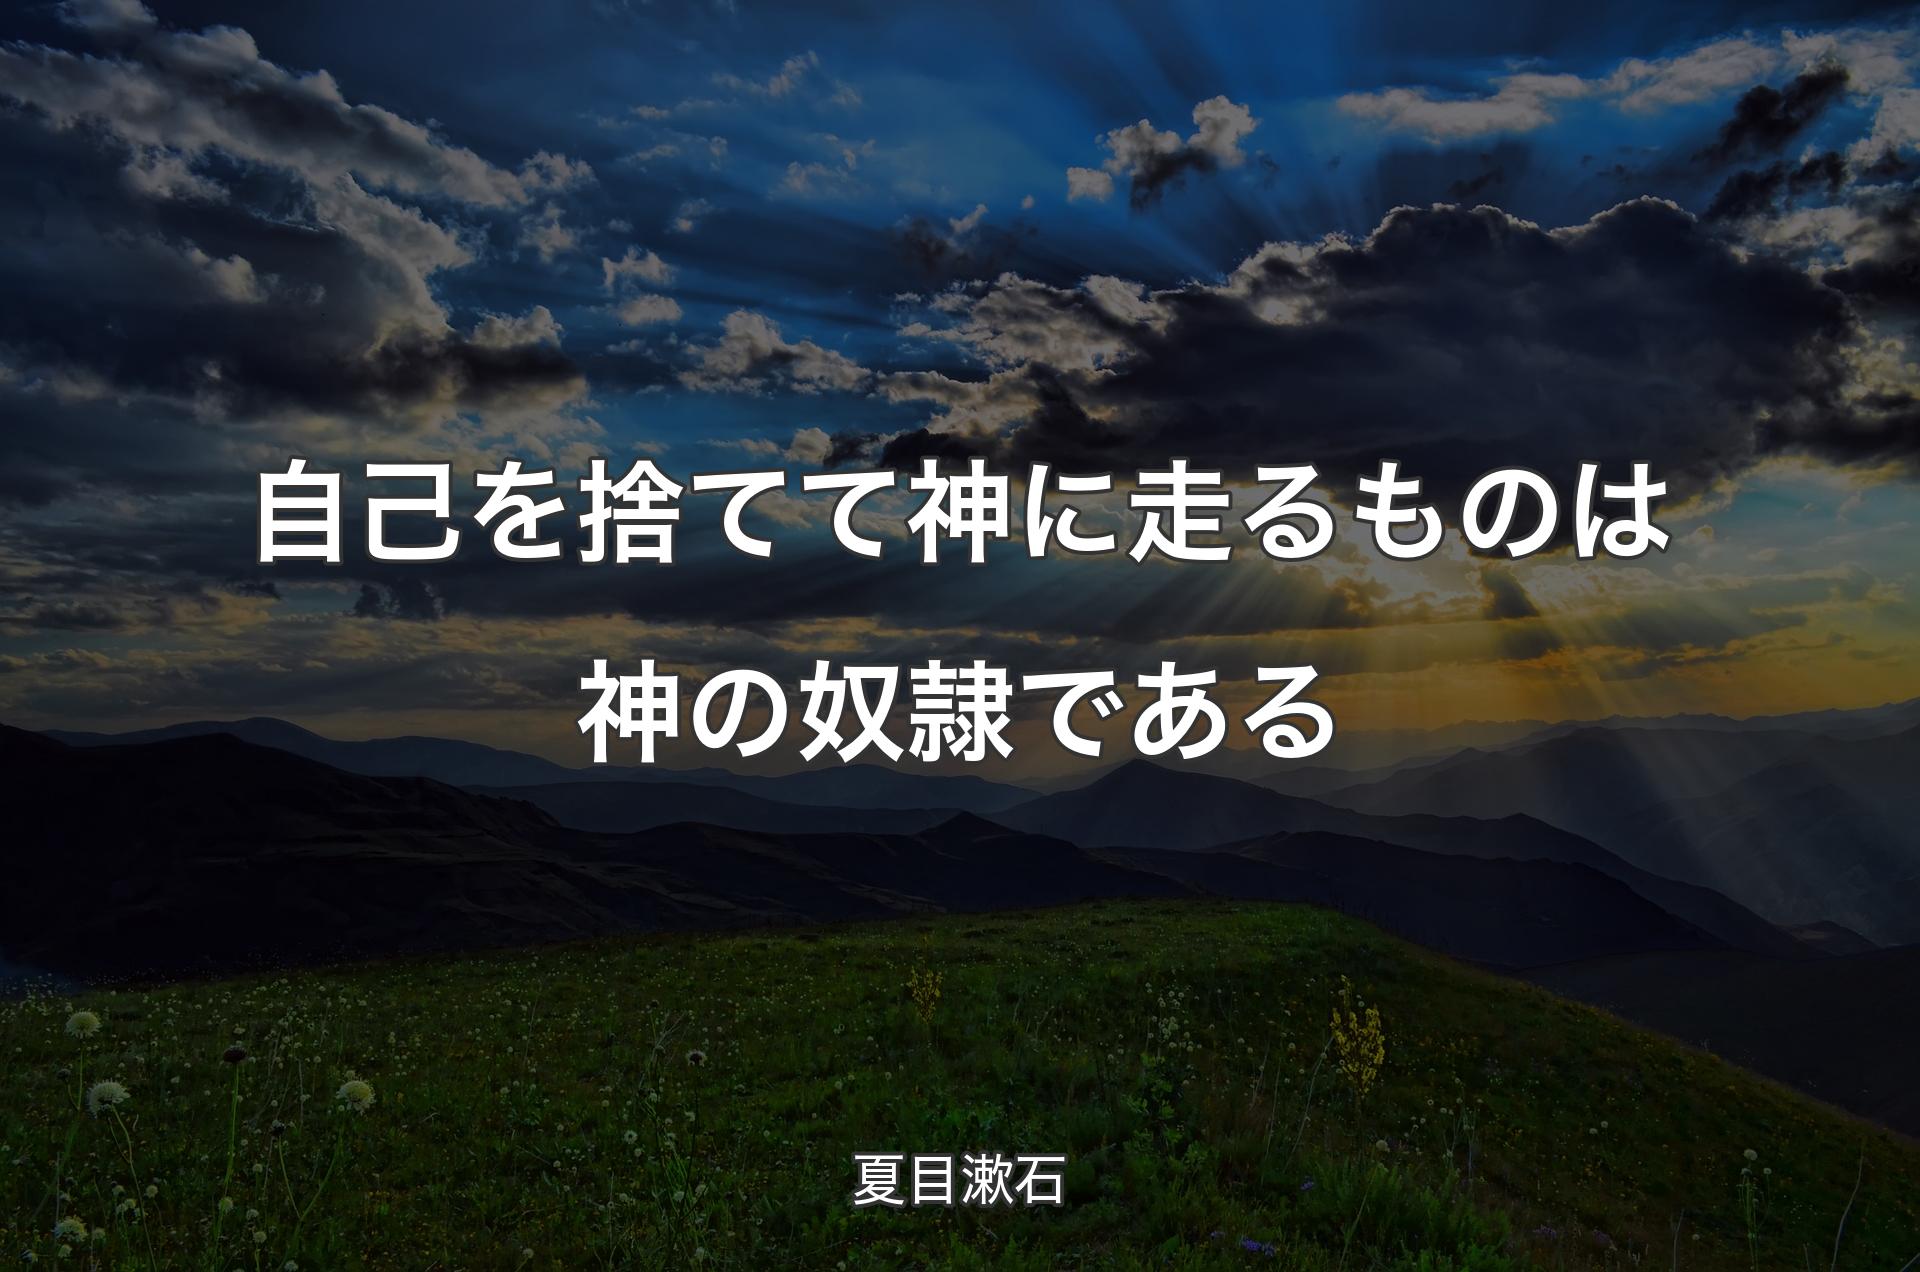 自己を捨てて神に走るものは神の奴隷である - 夏目漱石